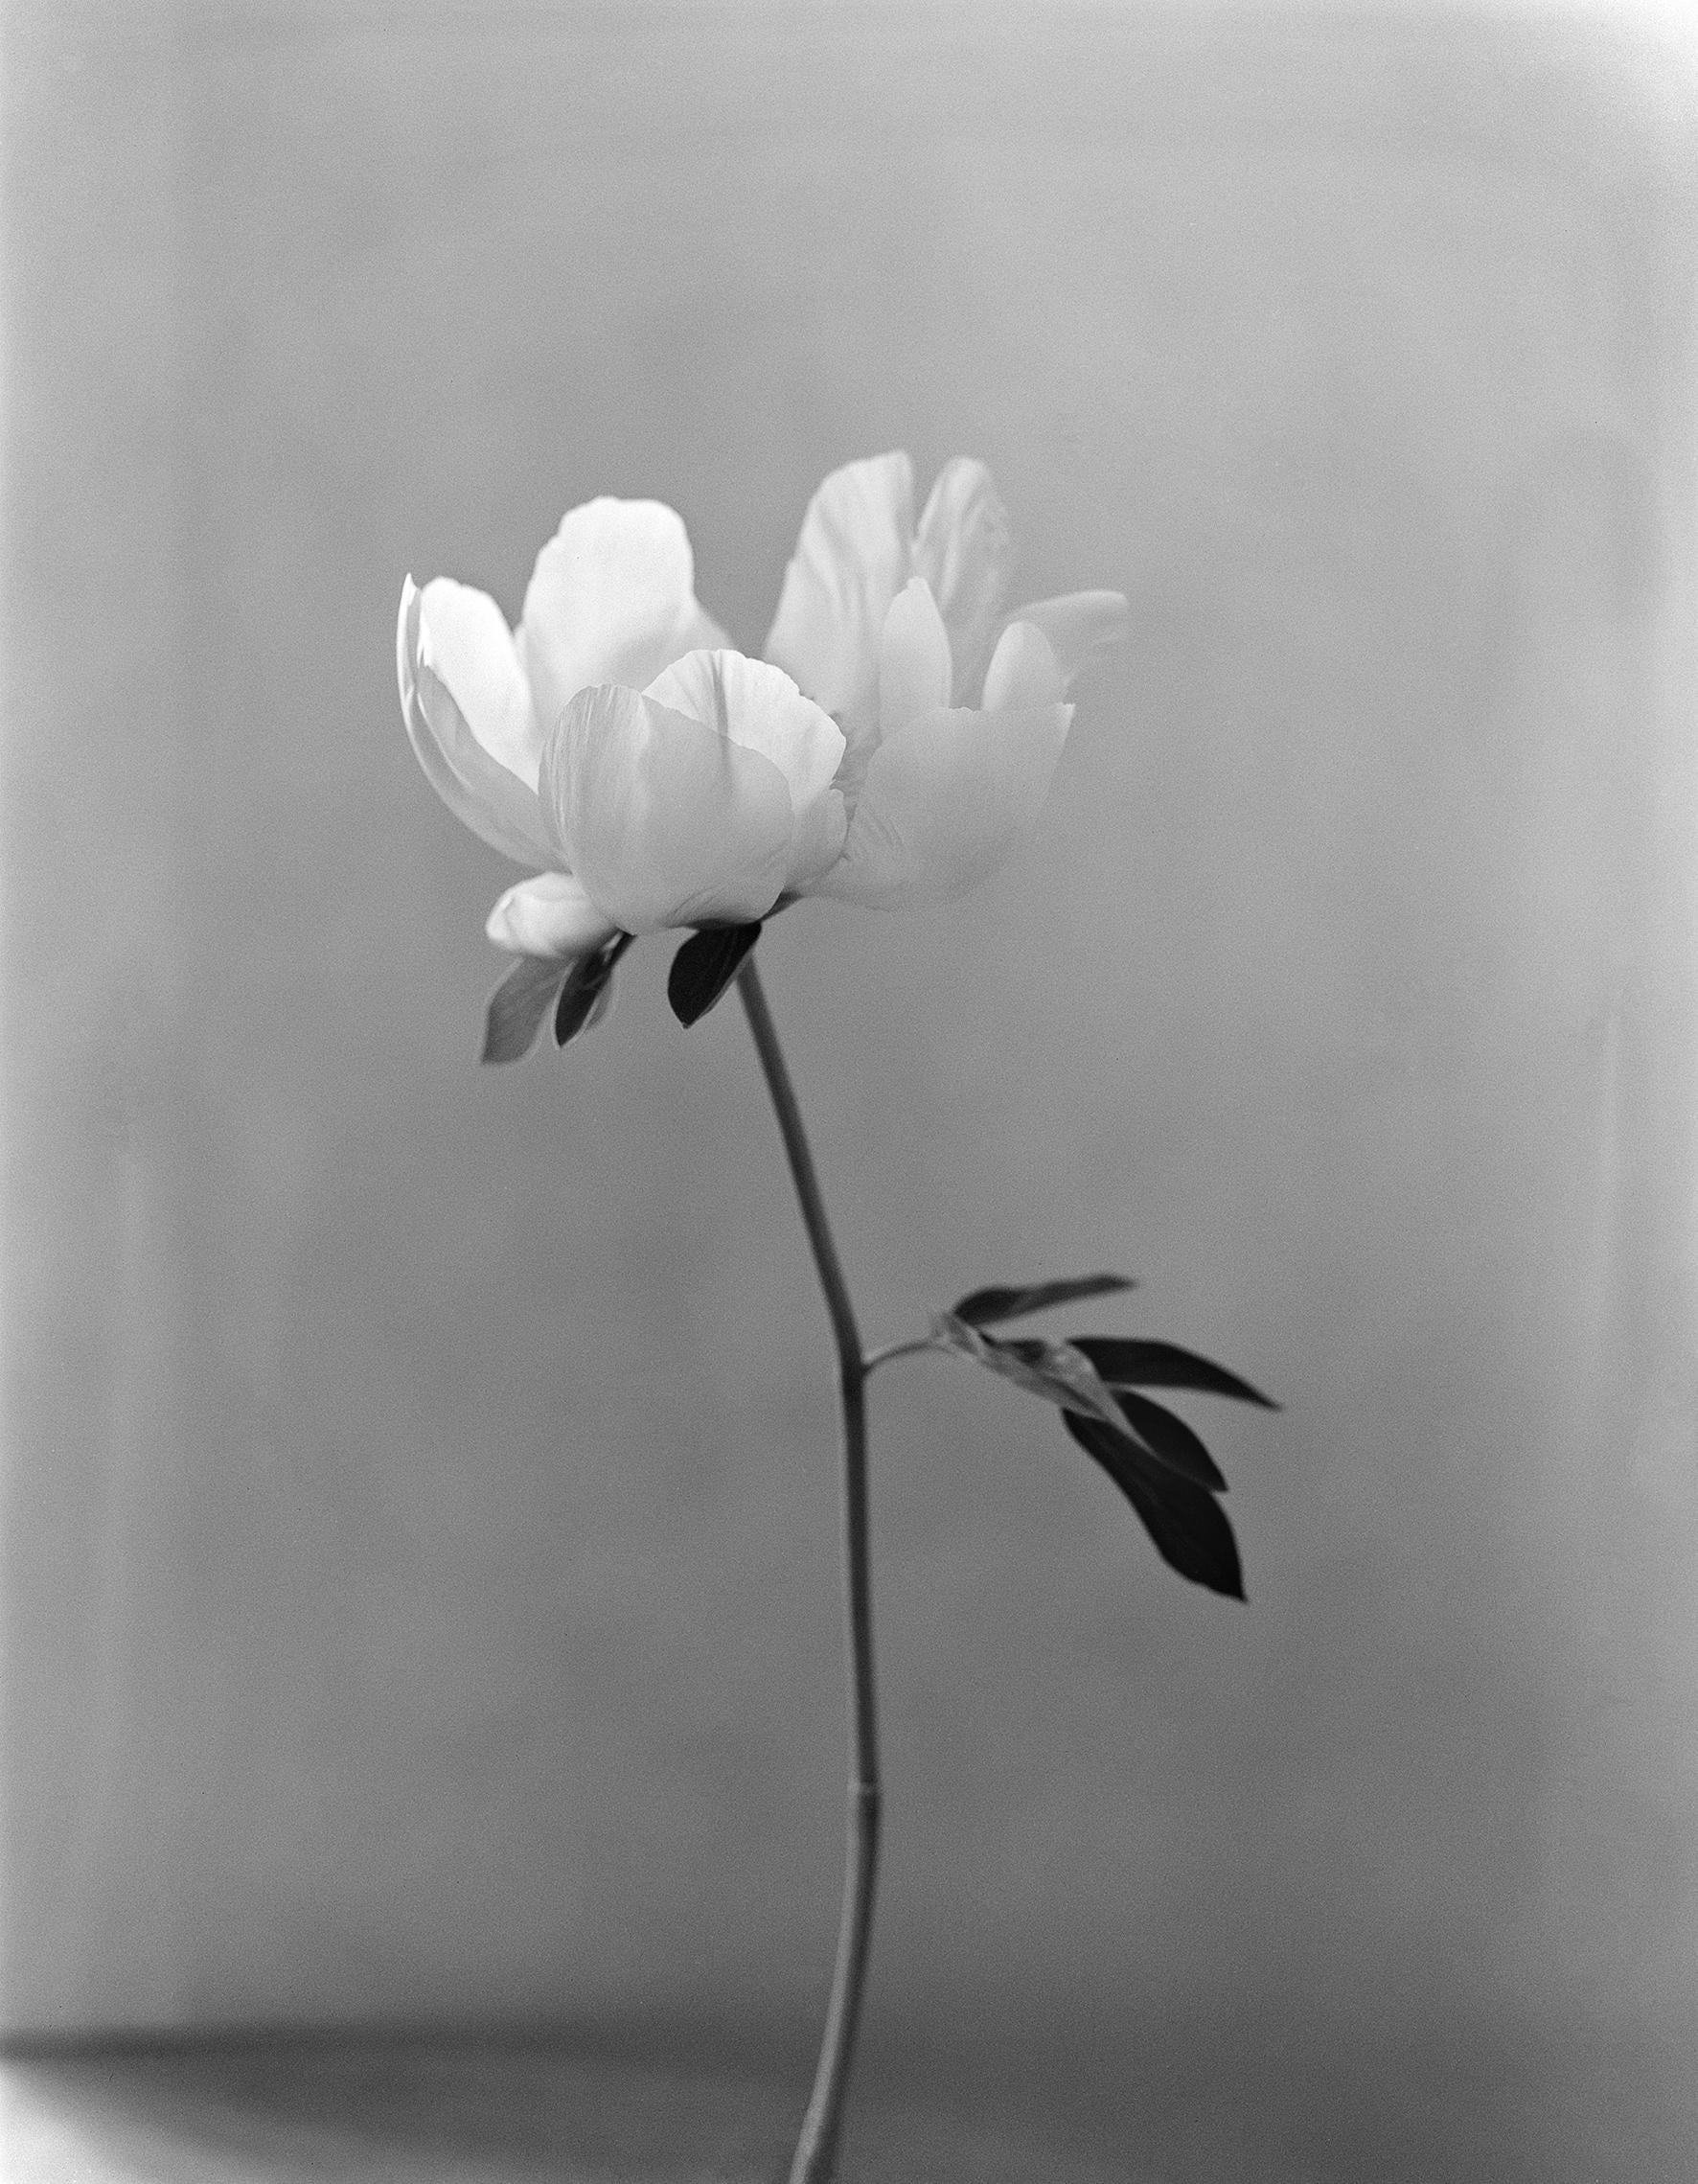 Ugne Pouwell Black and White Photograph – Pfingstrose – analoge Schwarz-Weiß-Blumenfotografie, limitierte Auflage von 10 Stück